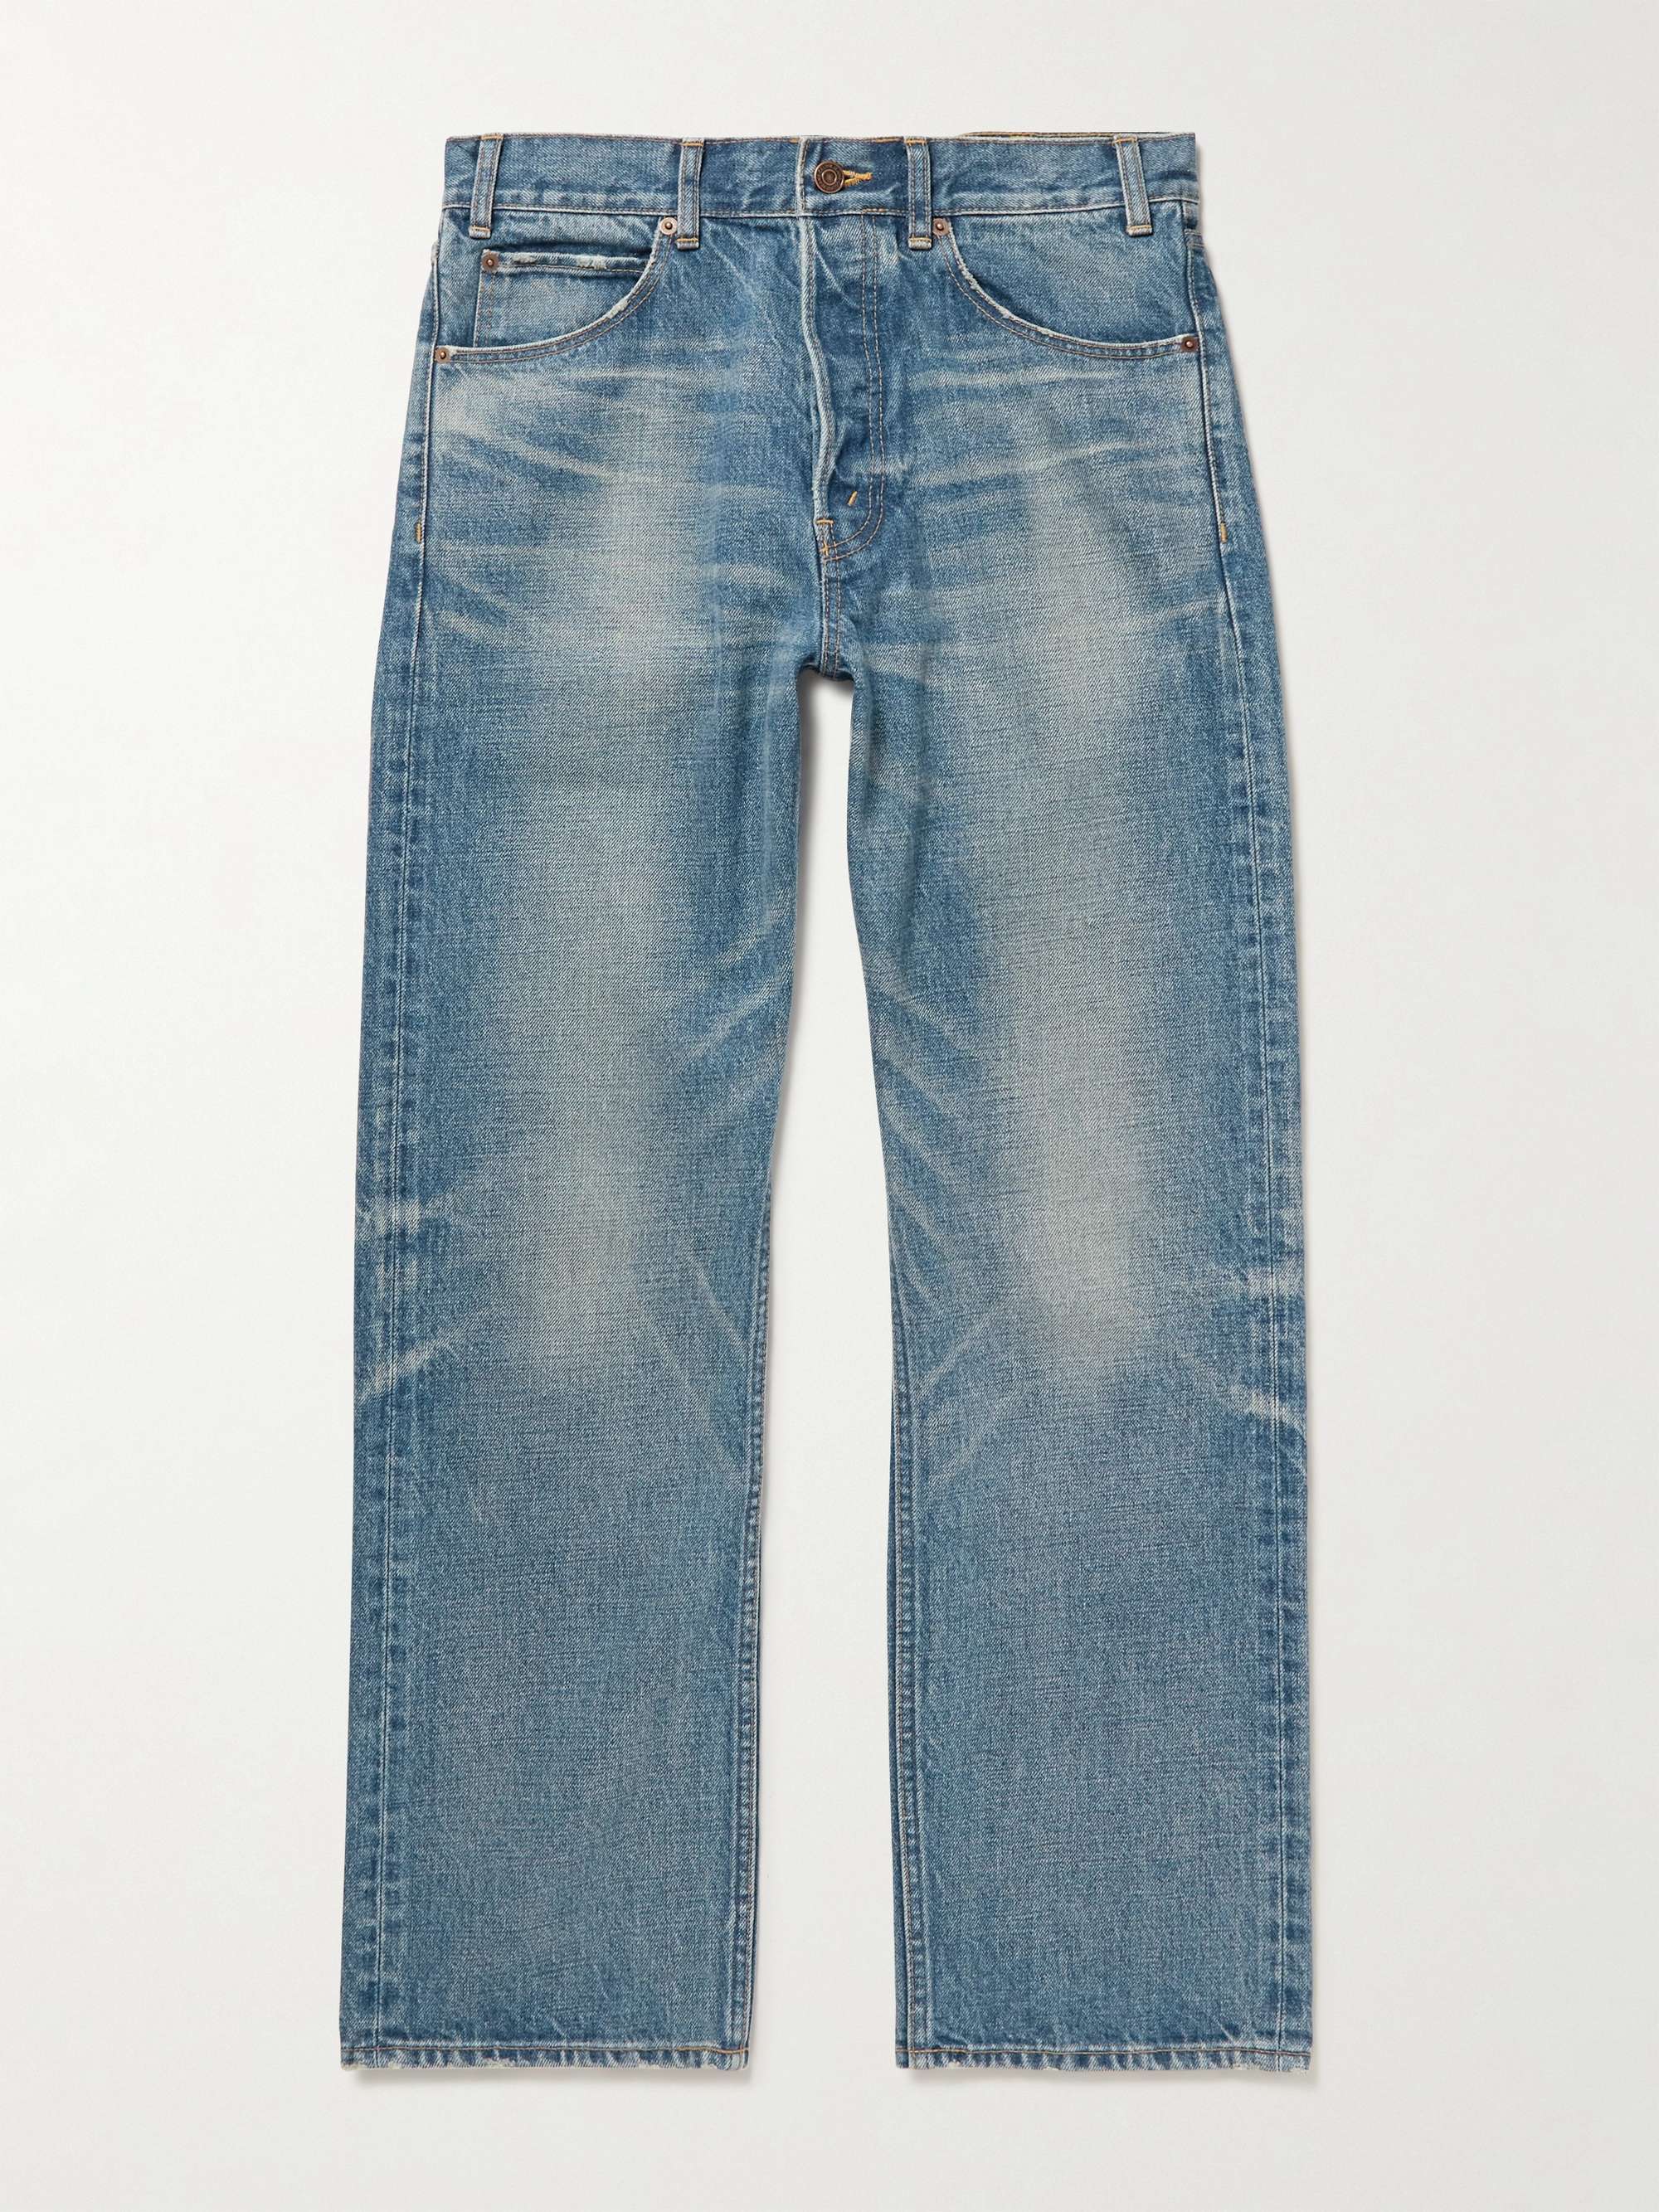 CELINE HOMME Kurt Straight-Leg Jeans | MR PORTER